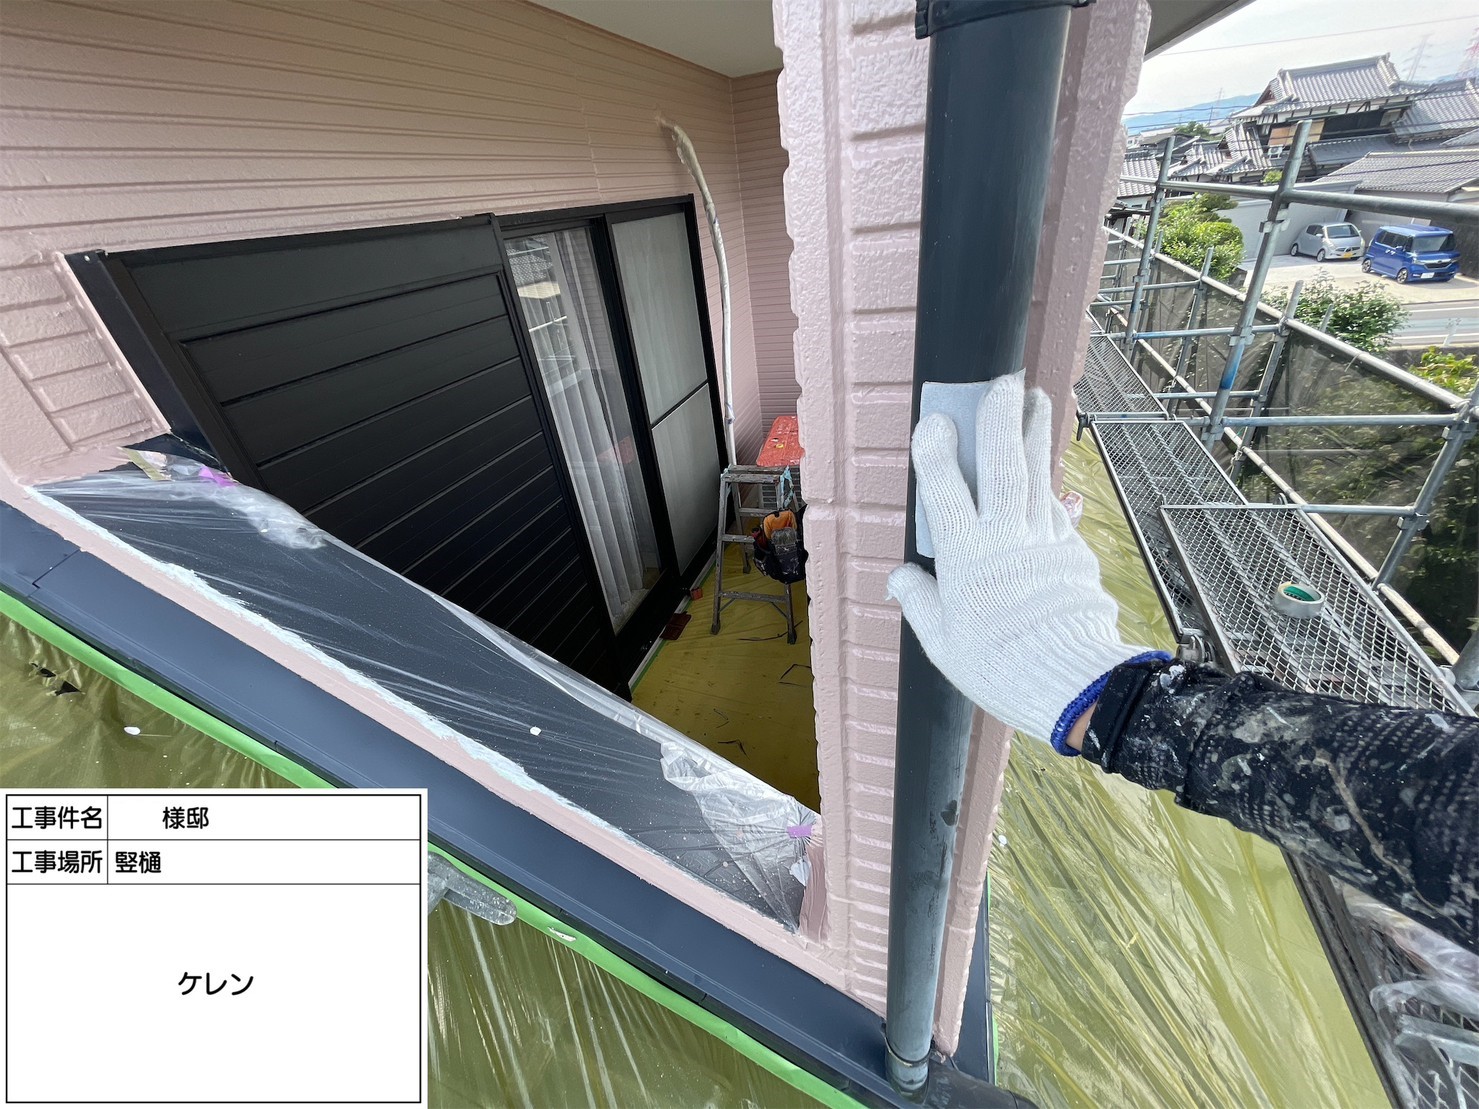 福岡県三潴郡大木町のN様邸で高品質のフッ素塗料を使用して外壁塗装工事を行っています。5/23着工です。【ホームページより】